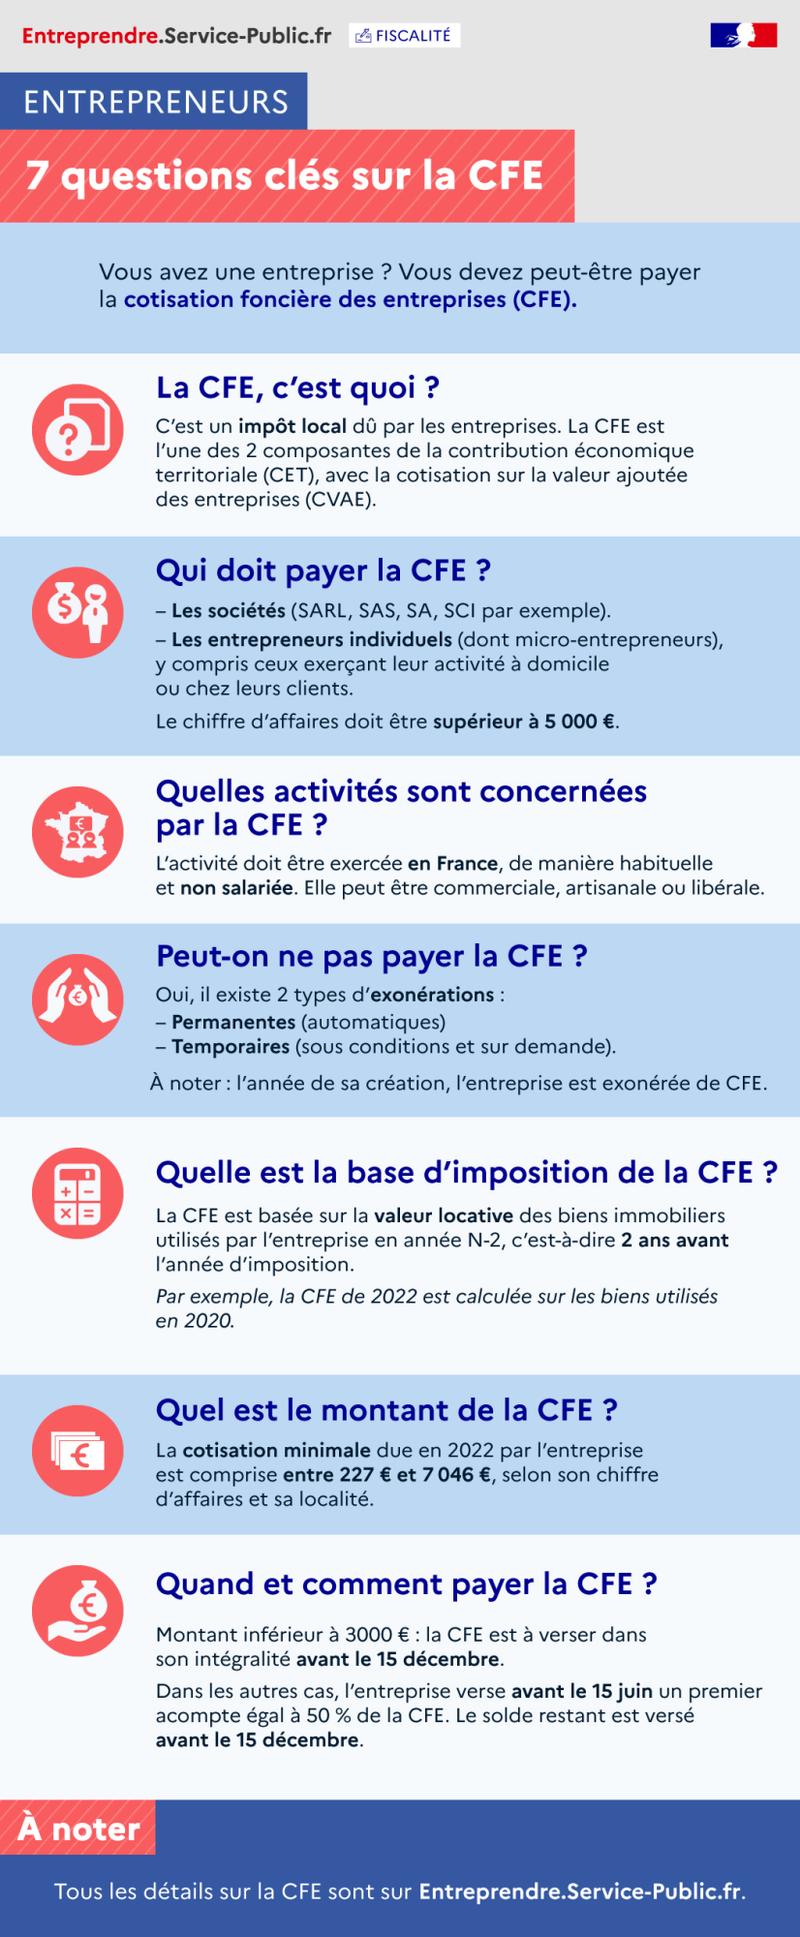 Key points on the CFE - plus de détails dans le texte suivant l’infographie